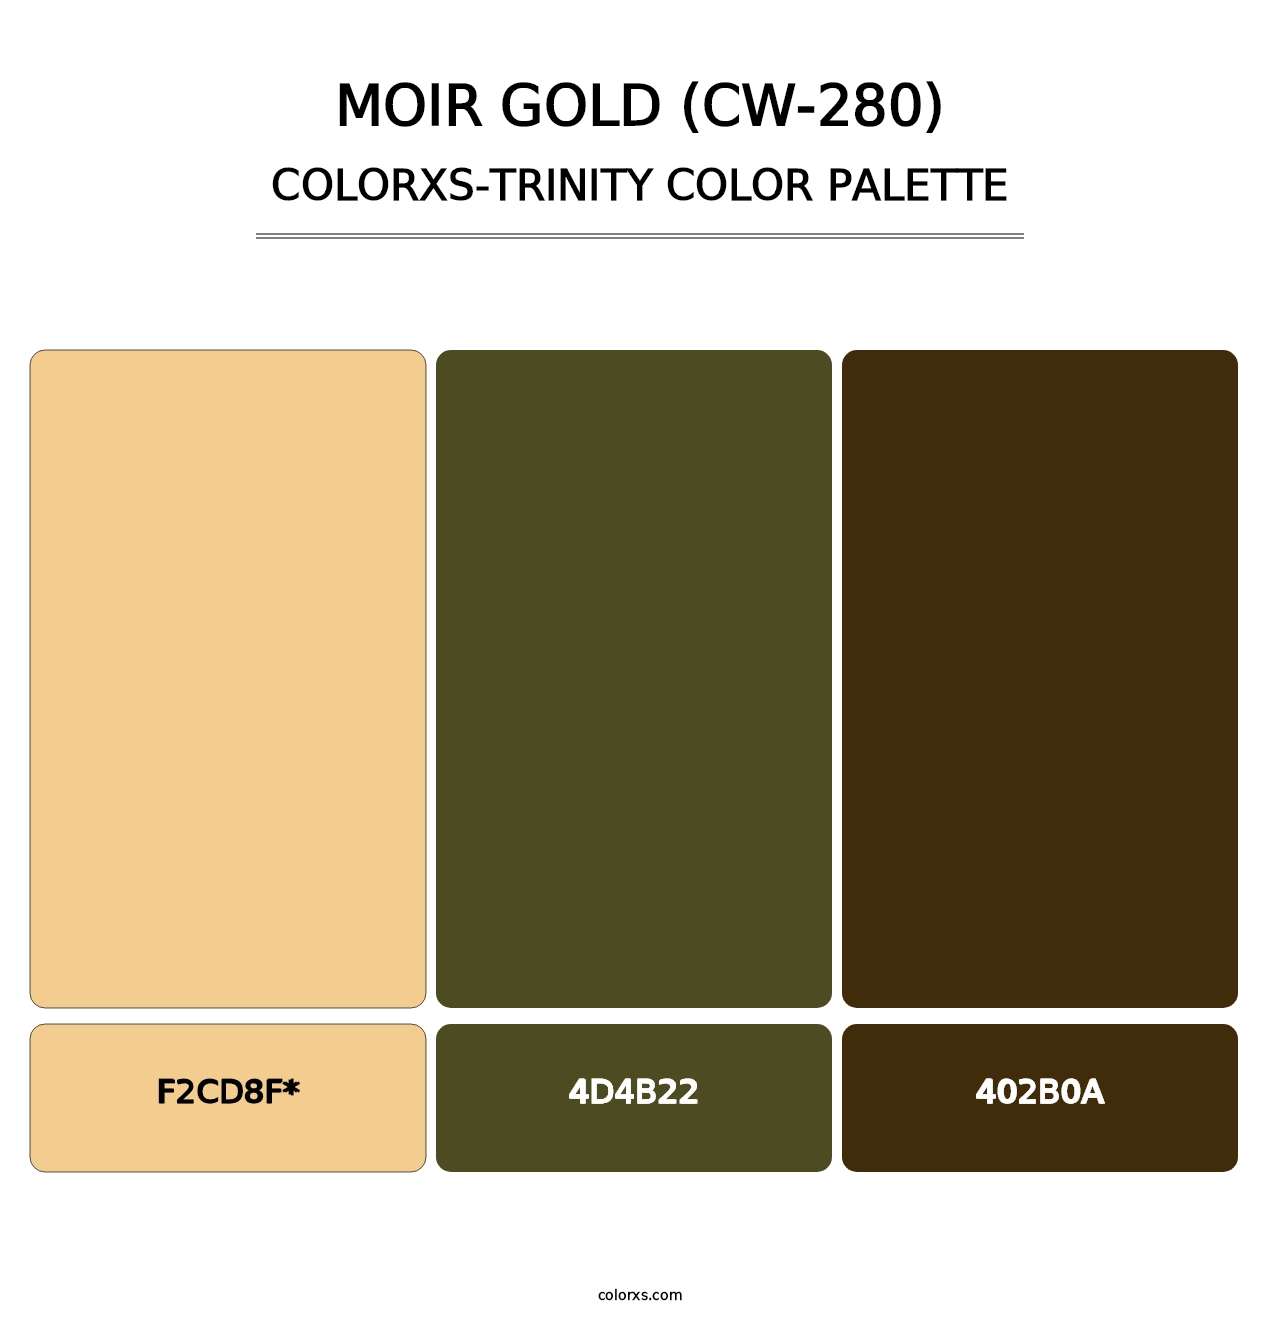 Moir Gold (CW-280) - Colorxs Trinity Palette